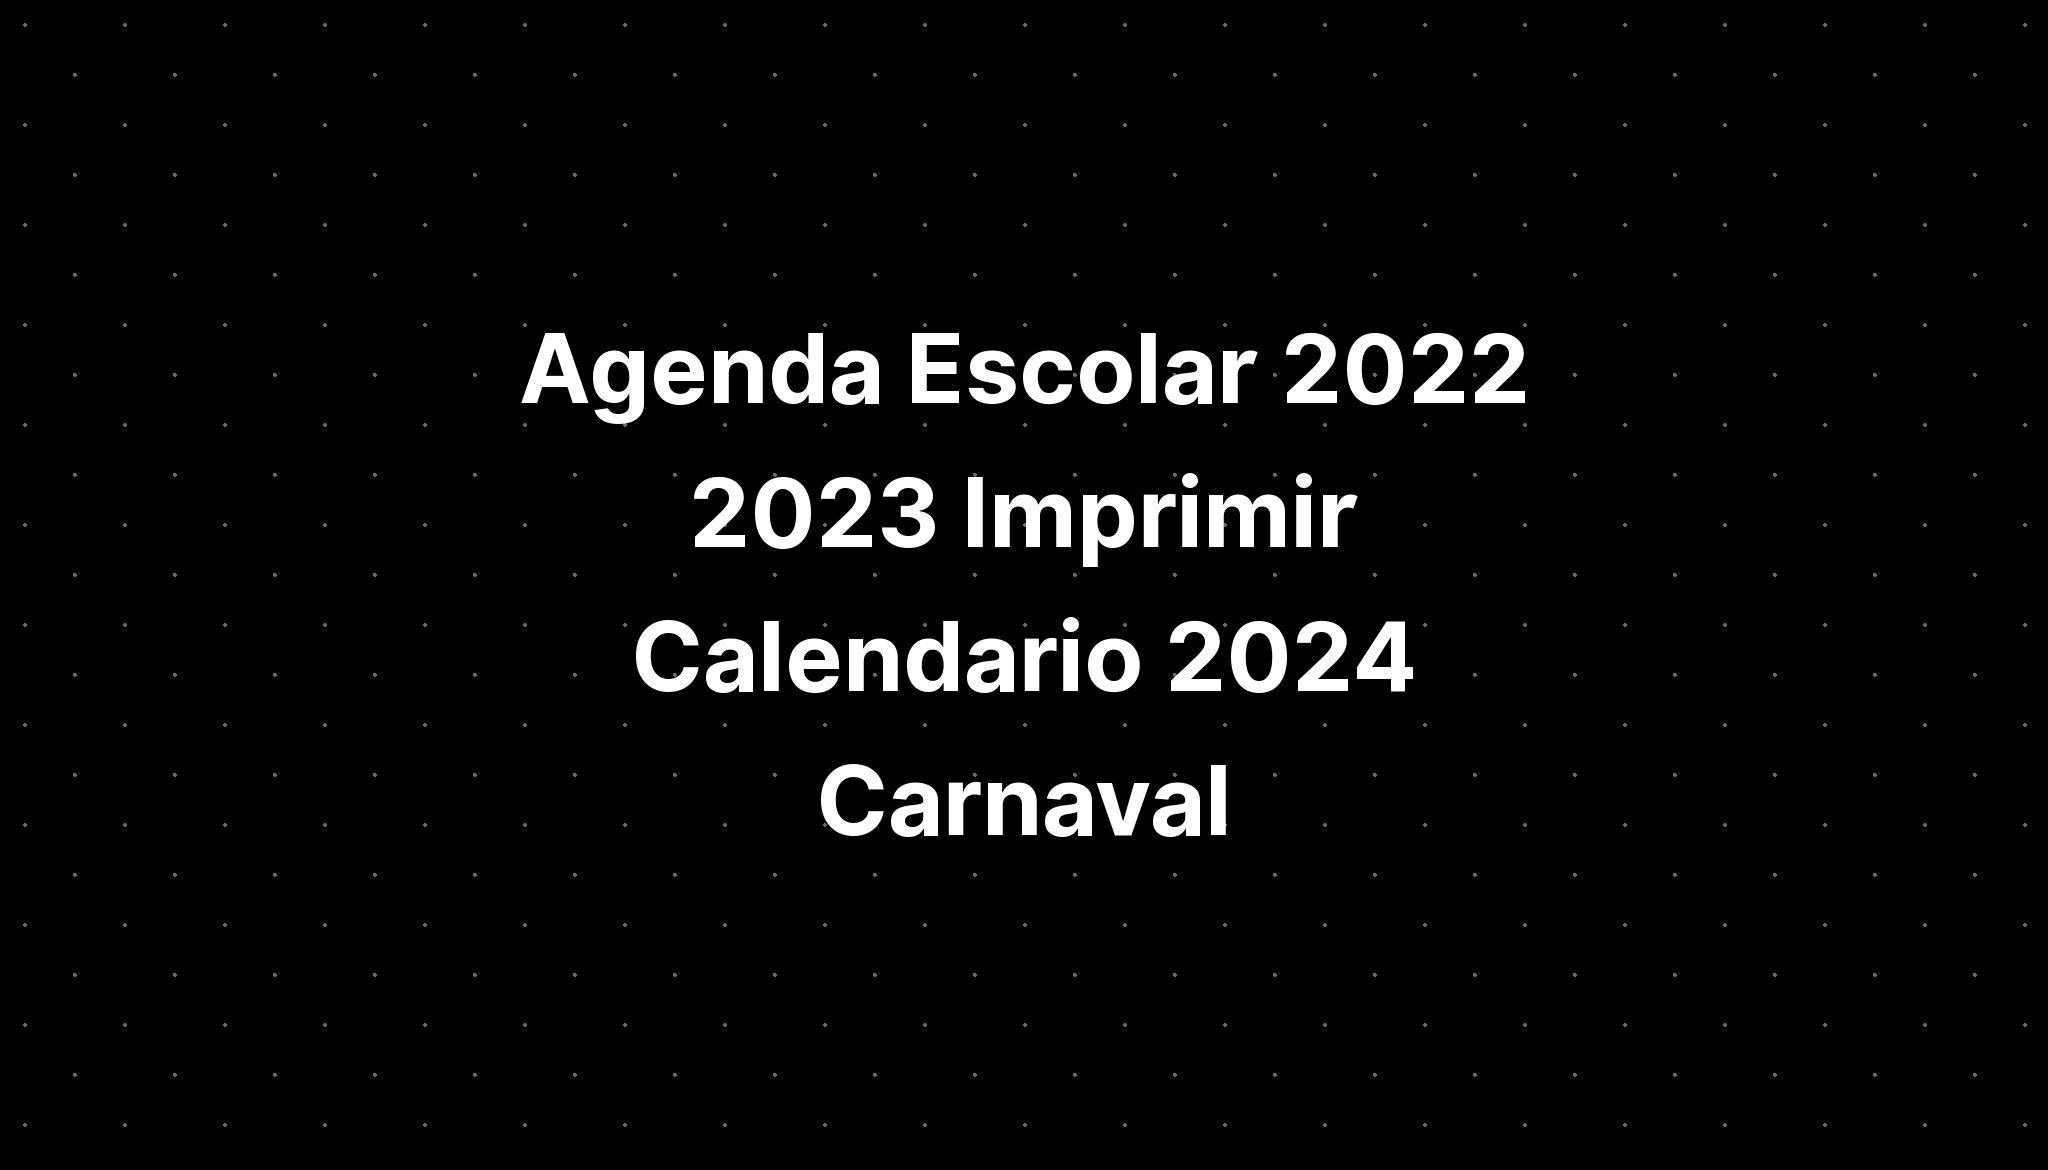 Agenda Escolar 2022 2023 Imprimir Calendario 2024 Carnaval IMAGESEE